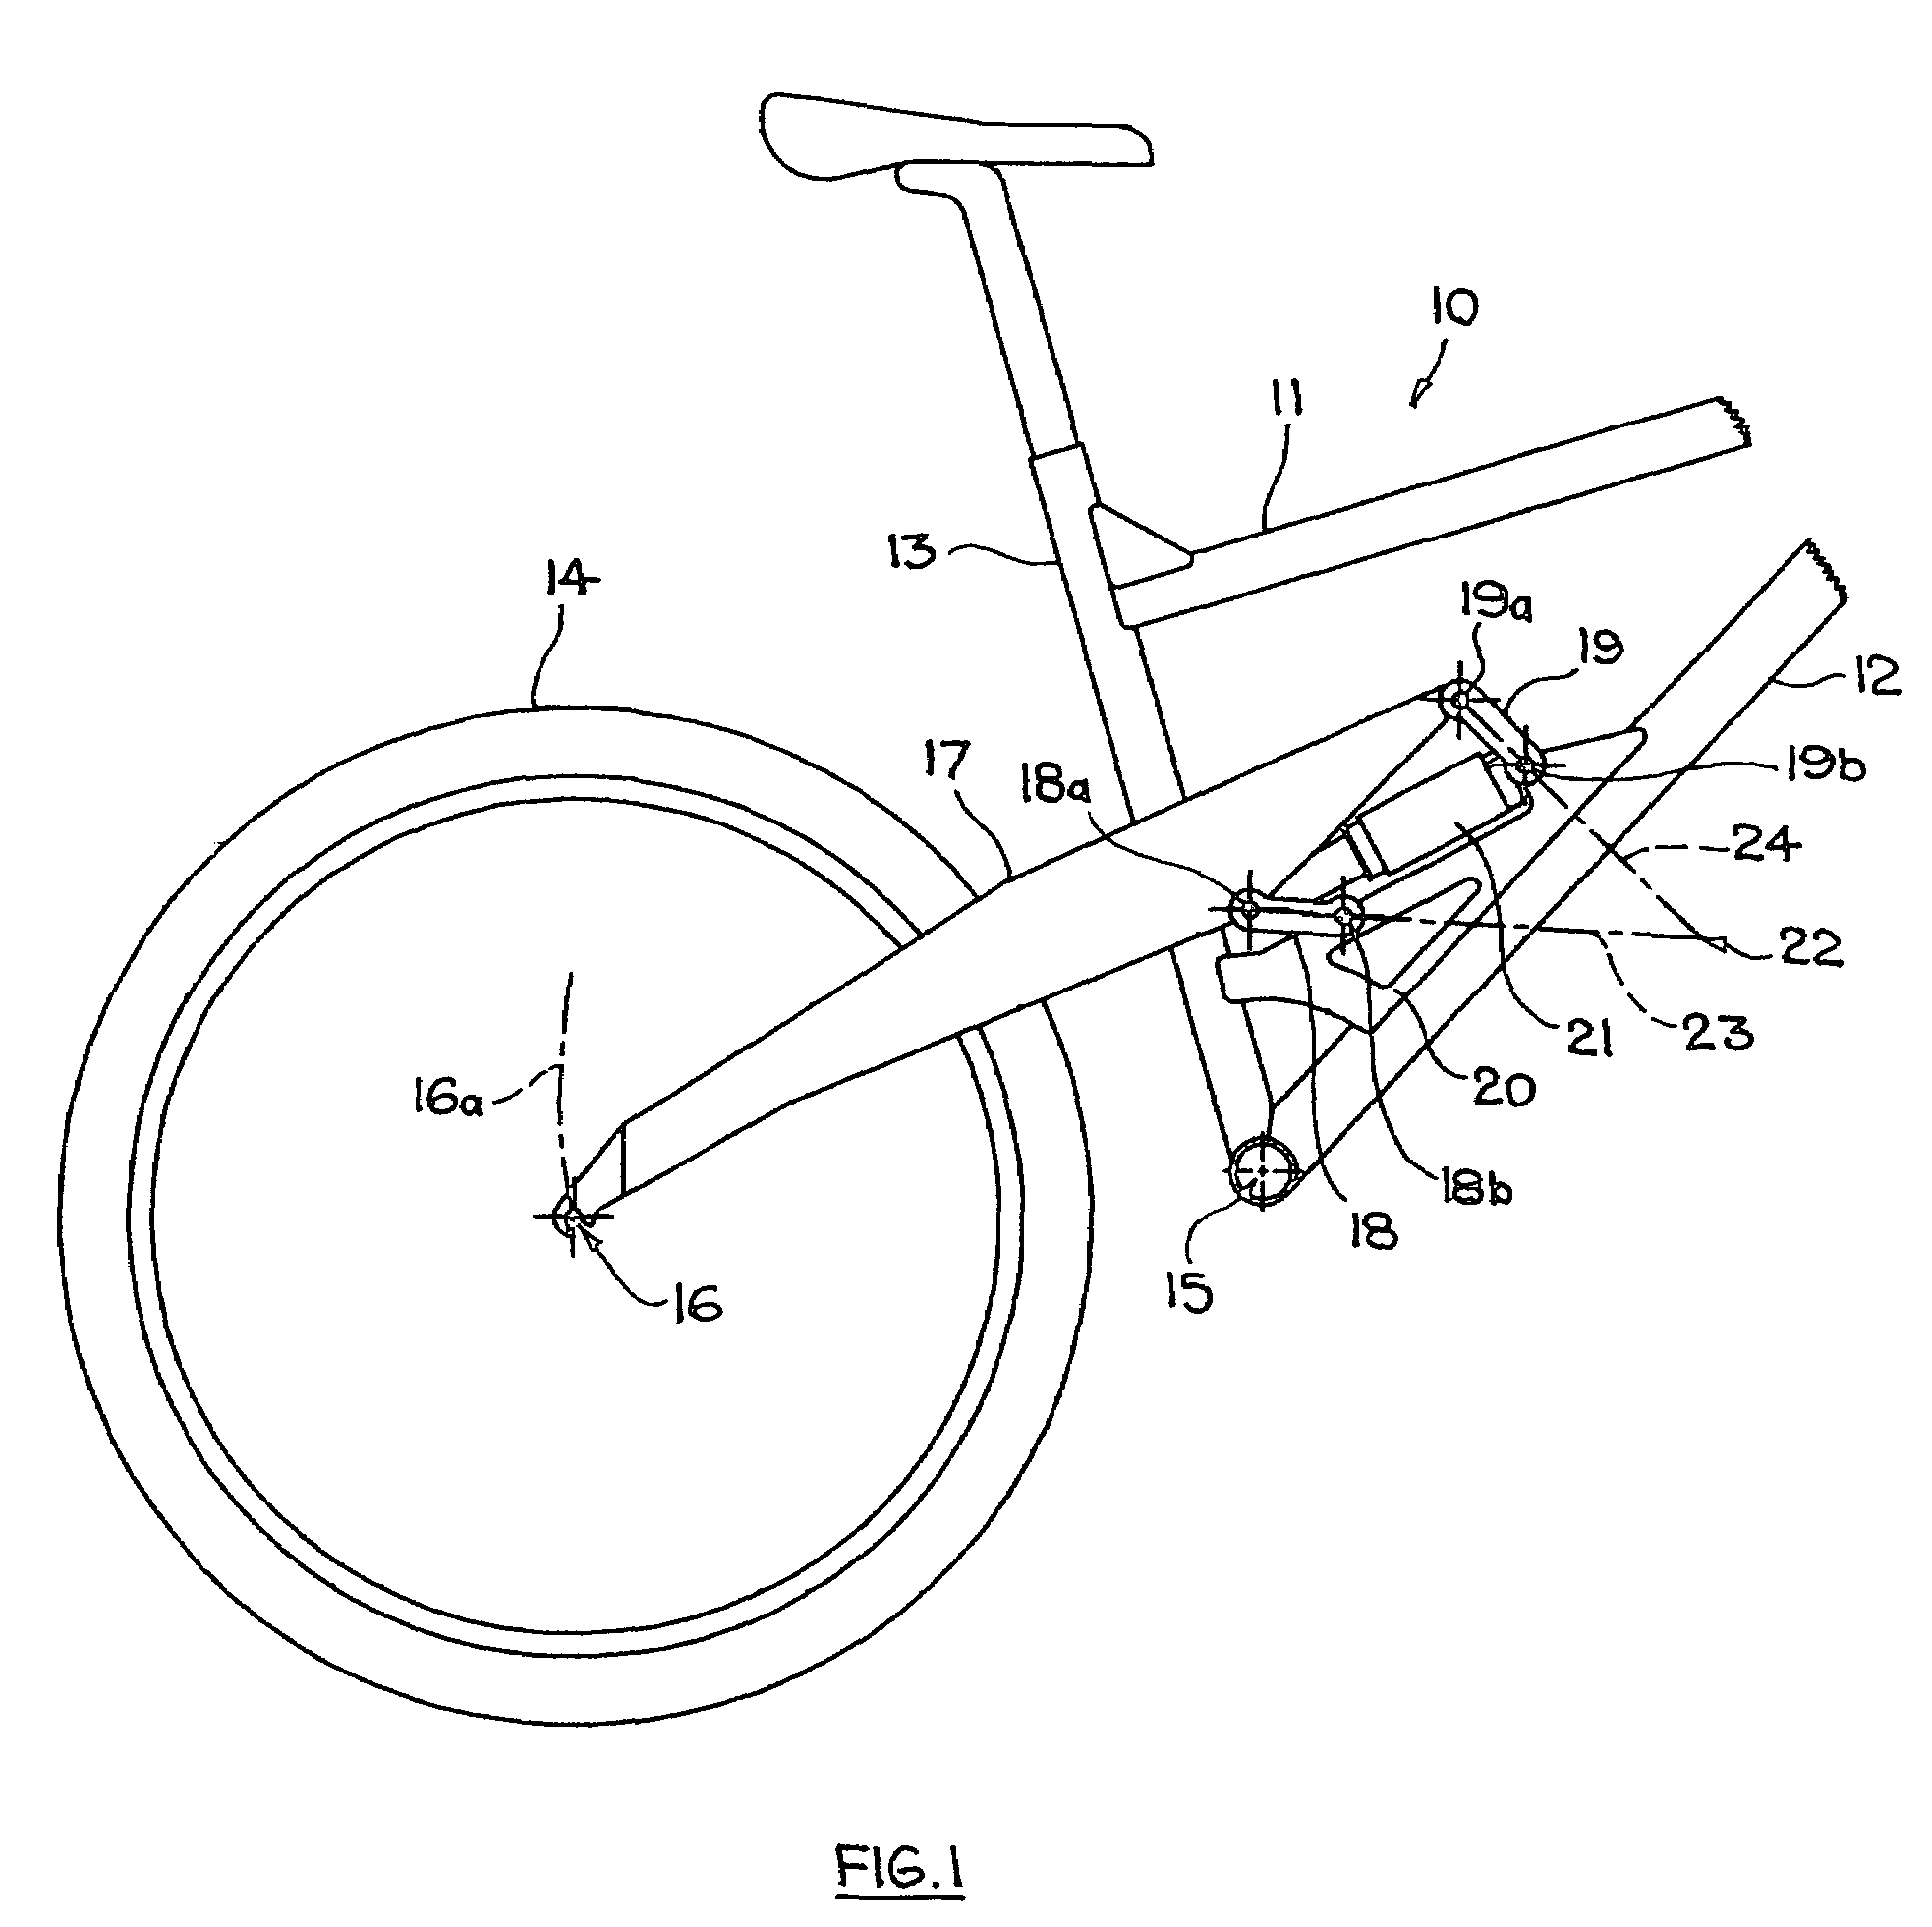 Bicycle rear suspension